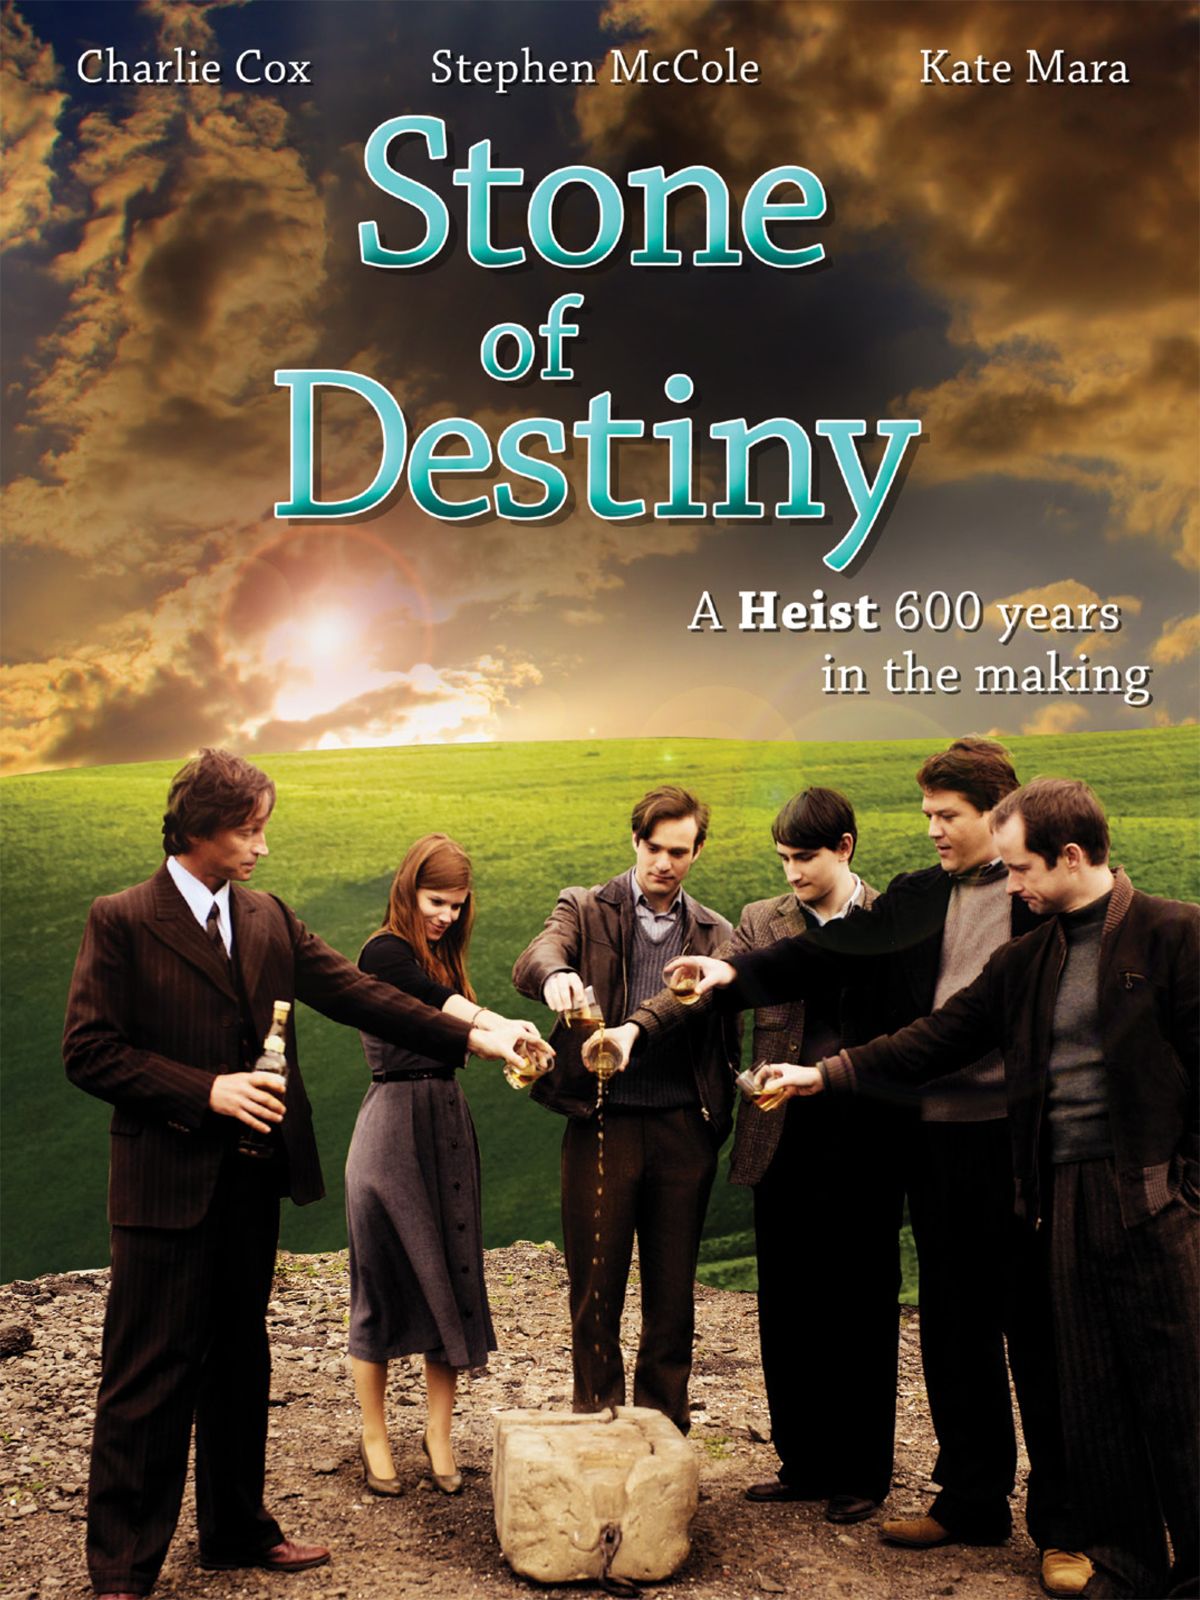 Keyart for the movie Stone of Destiny